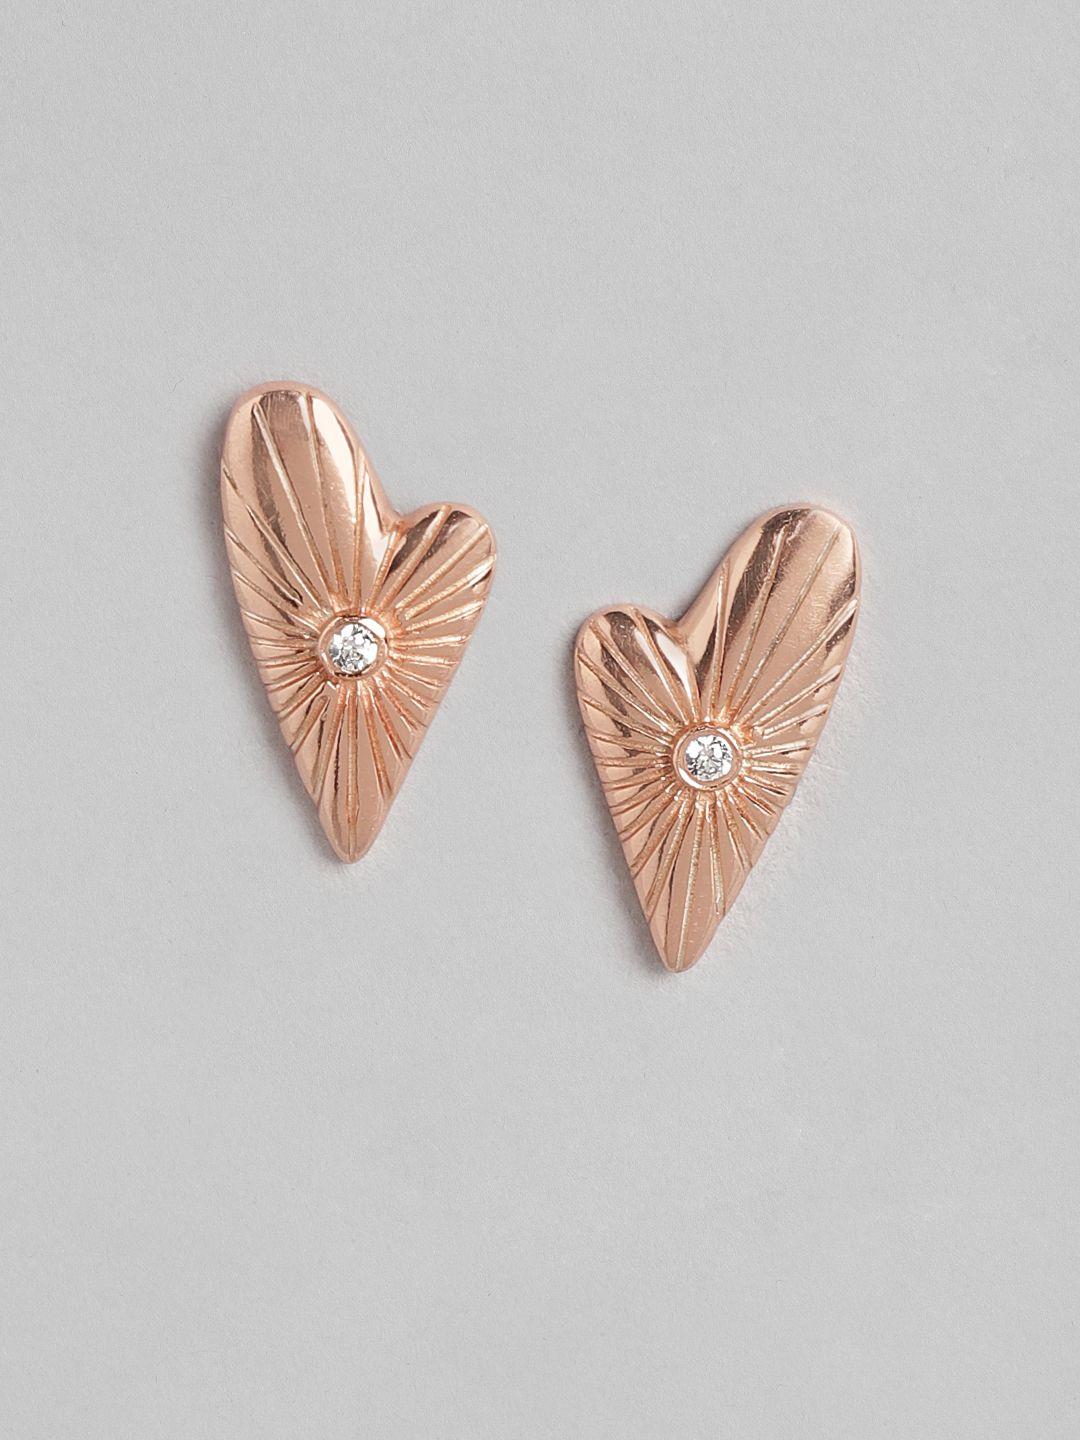 carlton london heart shaped studs earrings